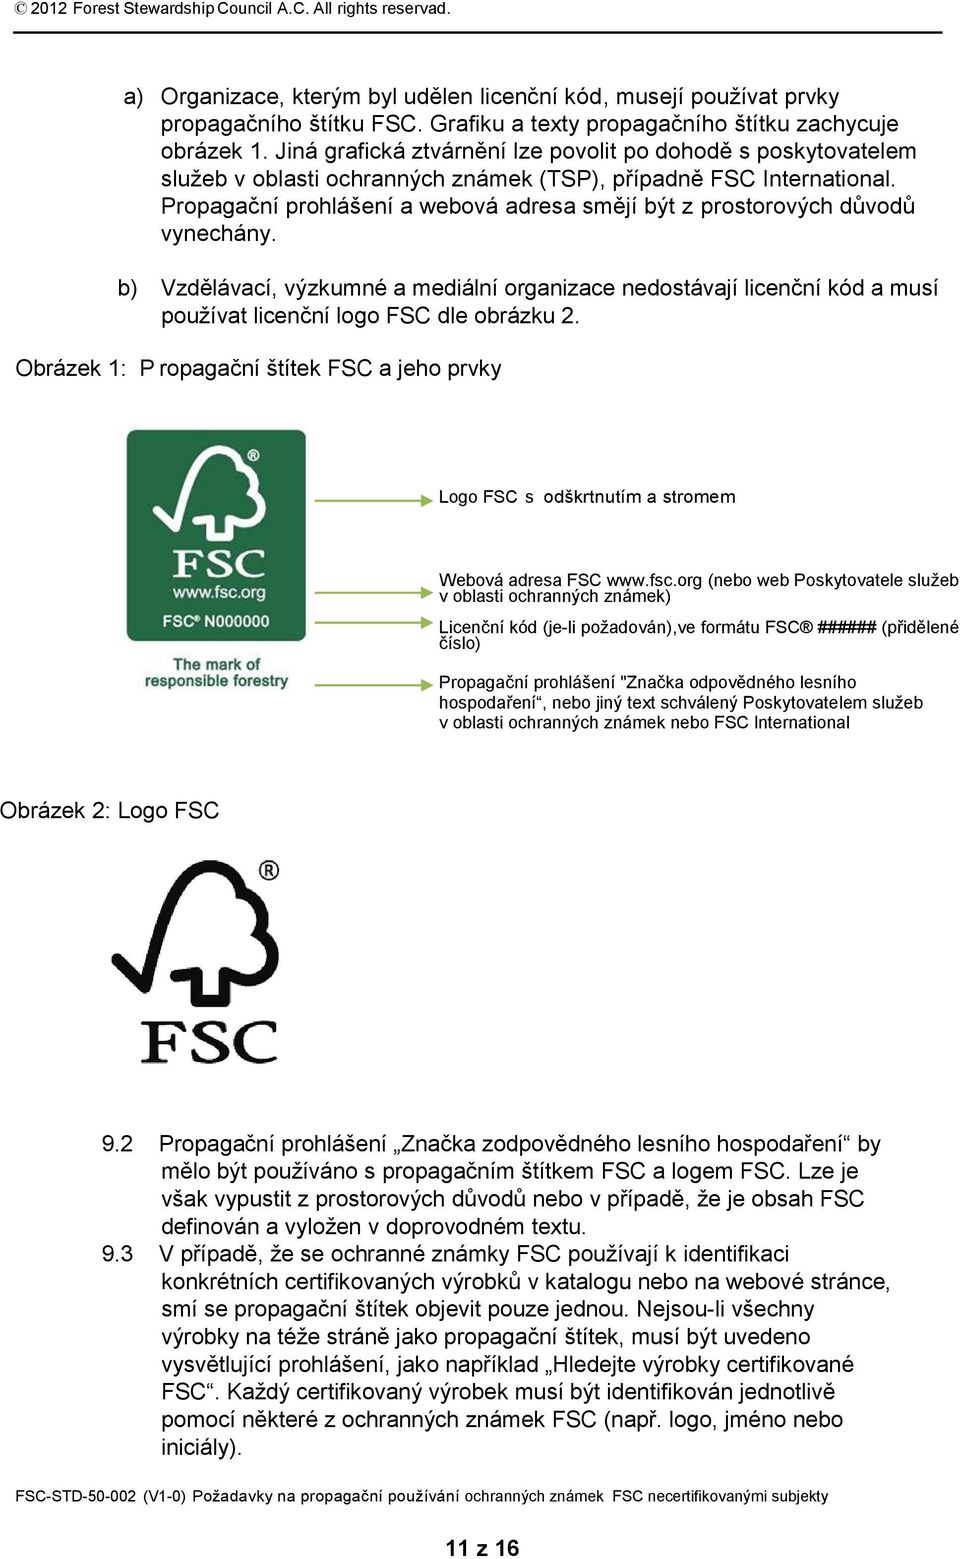 Propagační prohlášení a webová adresa smějí být z prostorových důvodů vynechány. b) Vzdělávací, výzkumné a mediální organizace nedostávají licenční kód a musí používat licenční logo FSC dle obrázku 2.